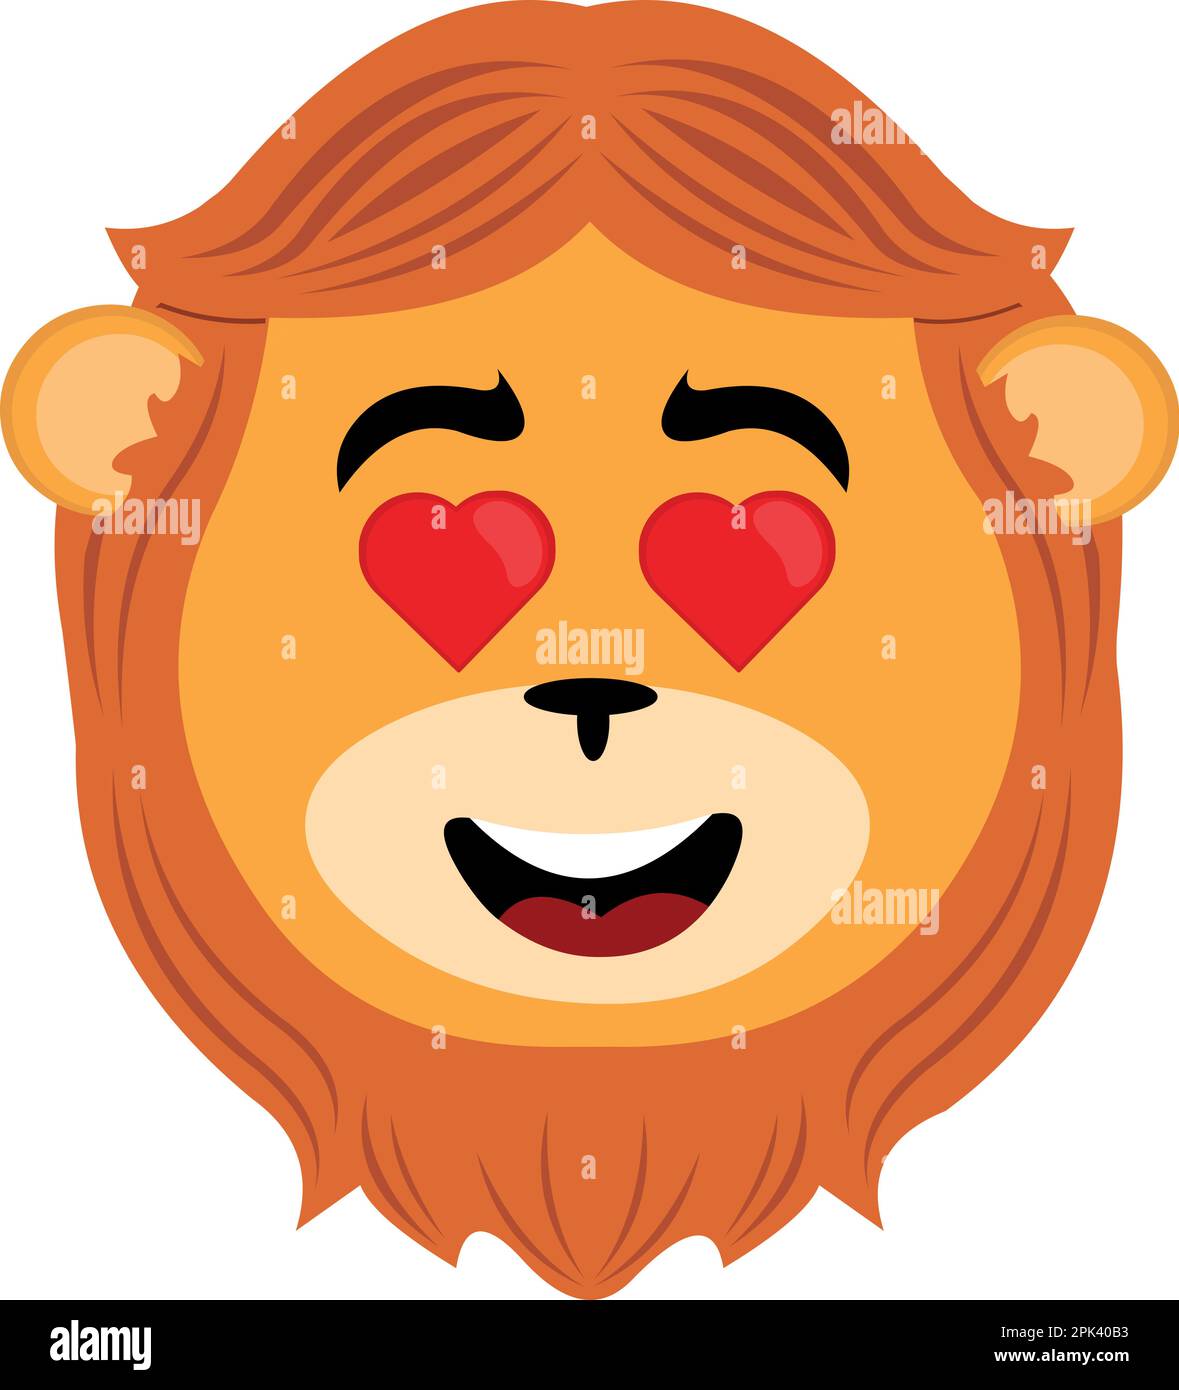 vektorbild eines Cartoon-Löwen, der sich liebt, mit herzförmigen Augen Stock Vektor